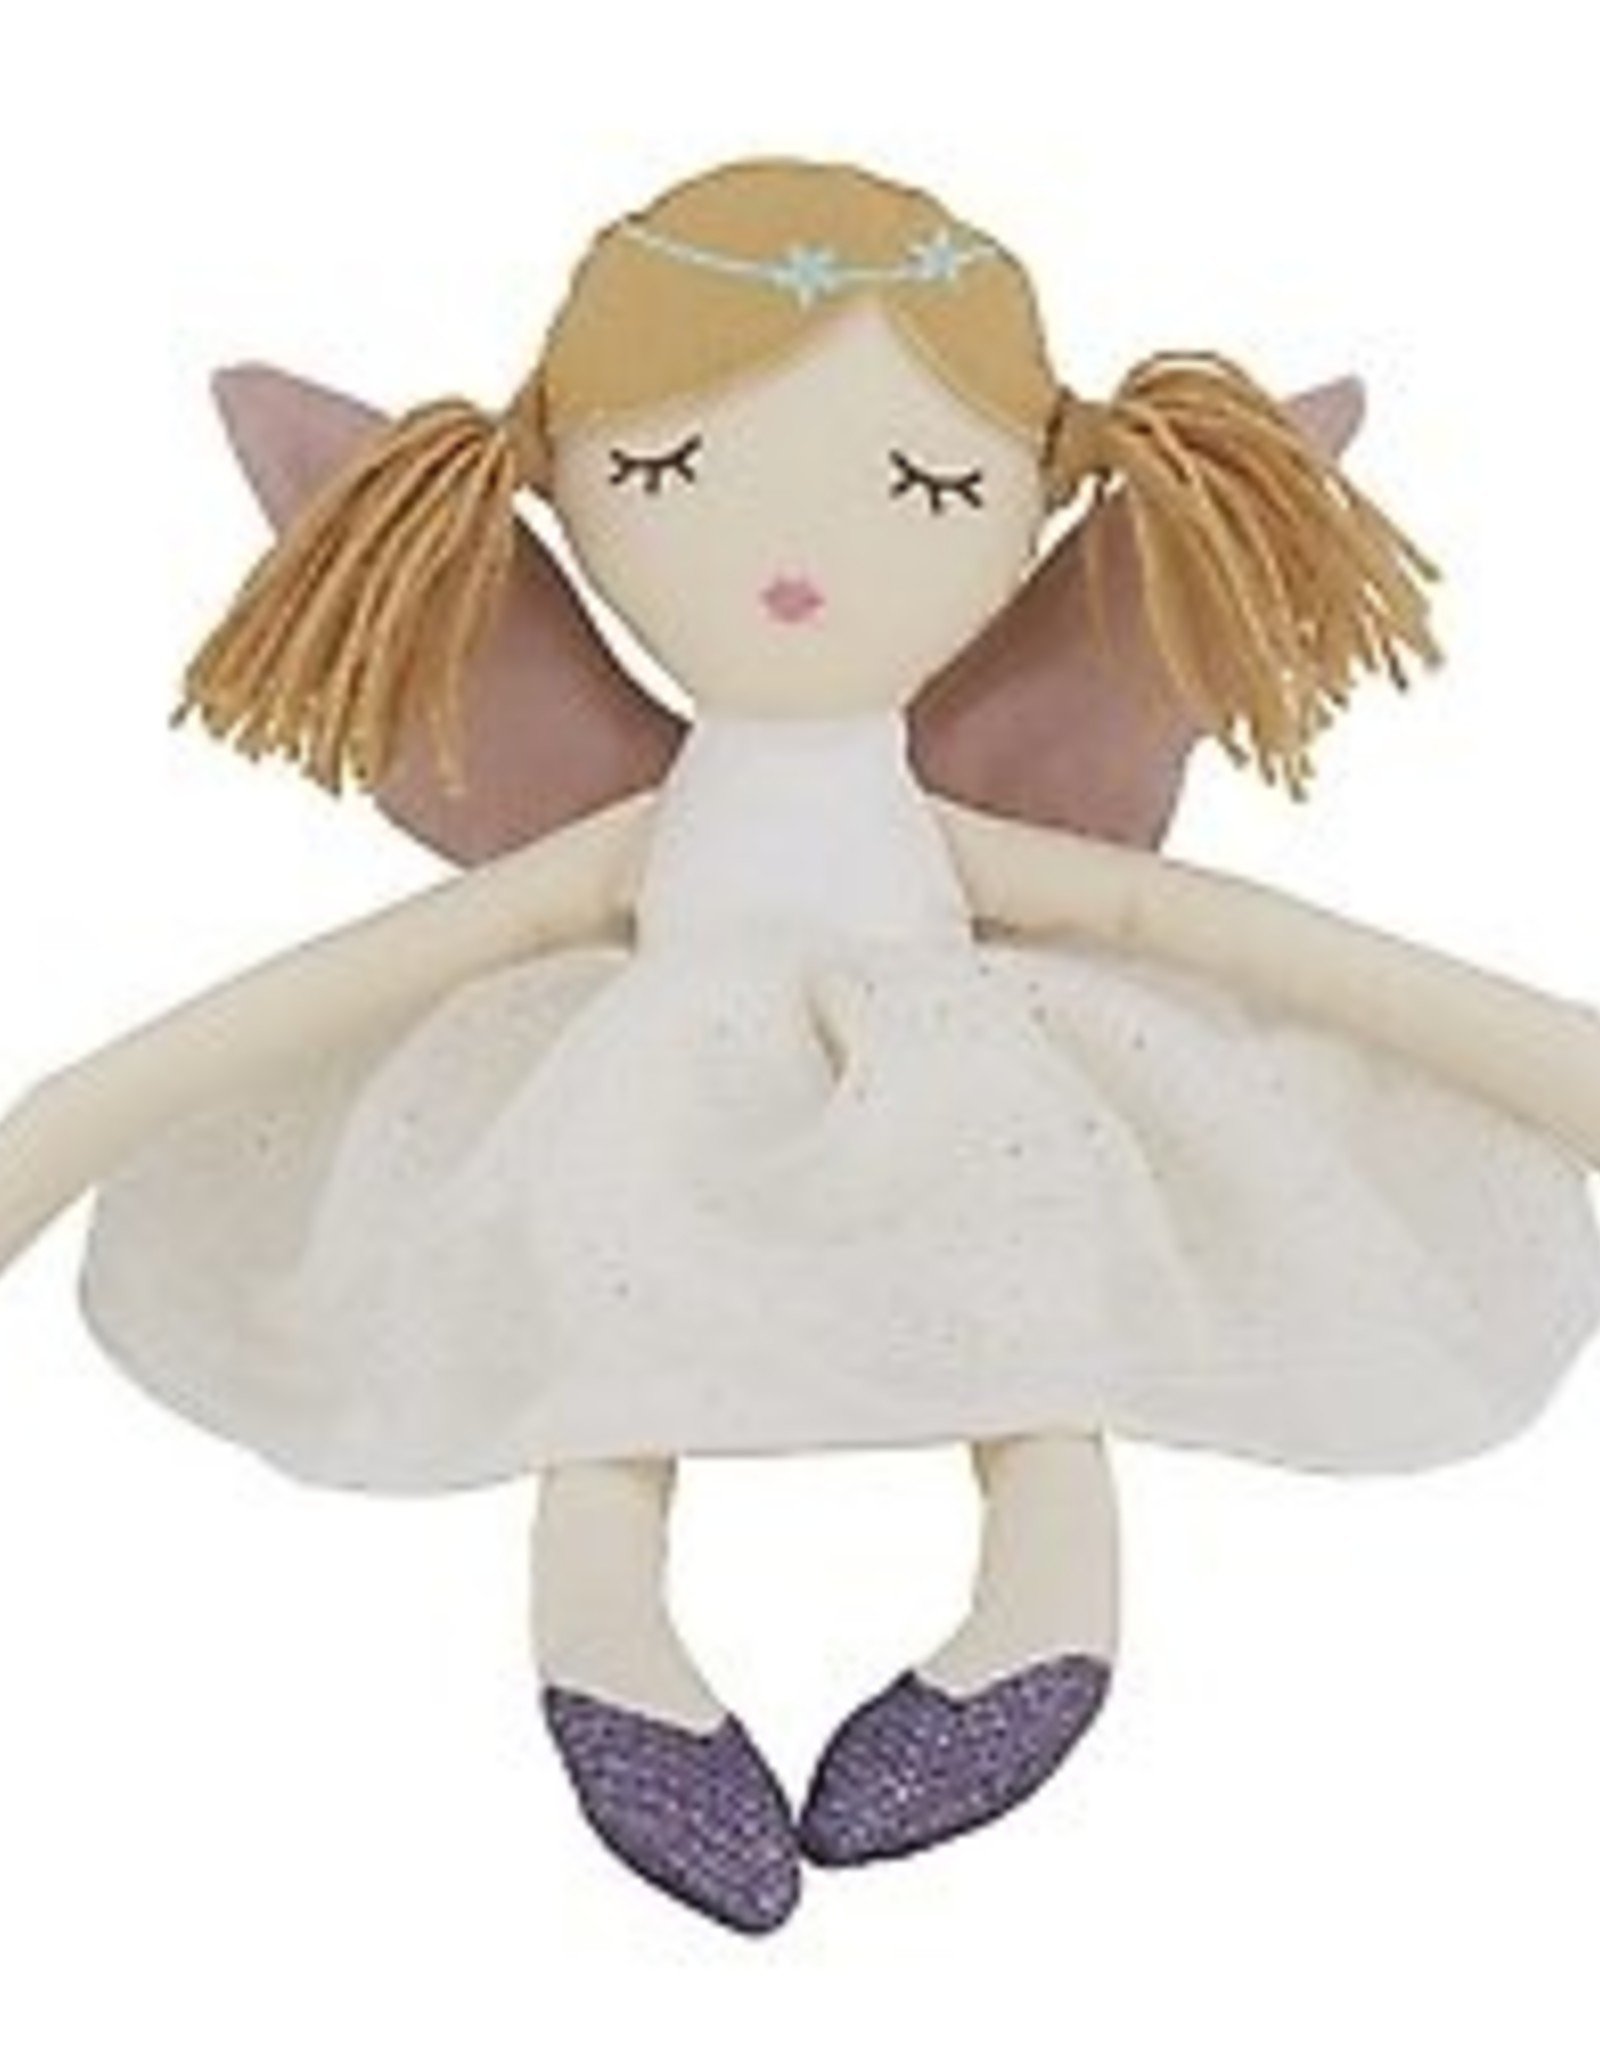 Stephan Baby Fairy Doll